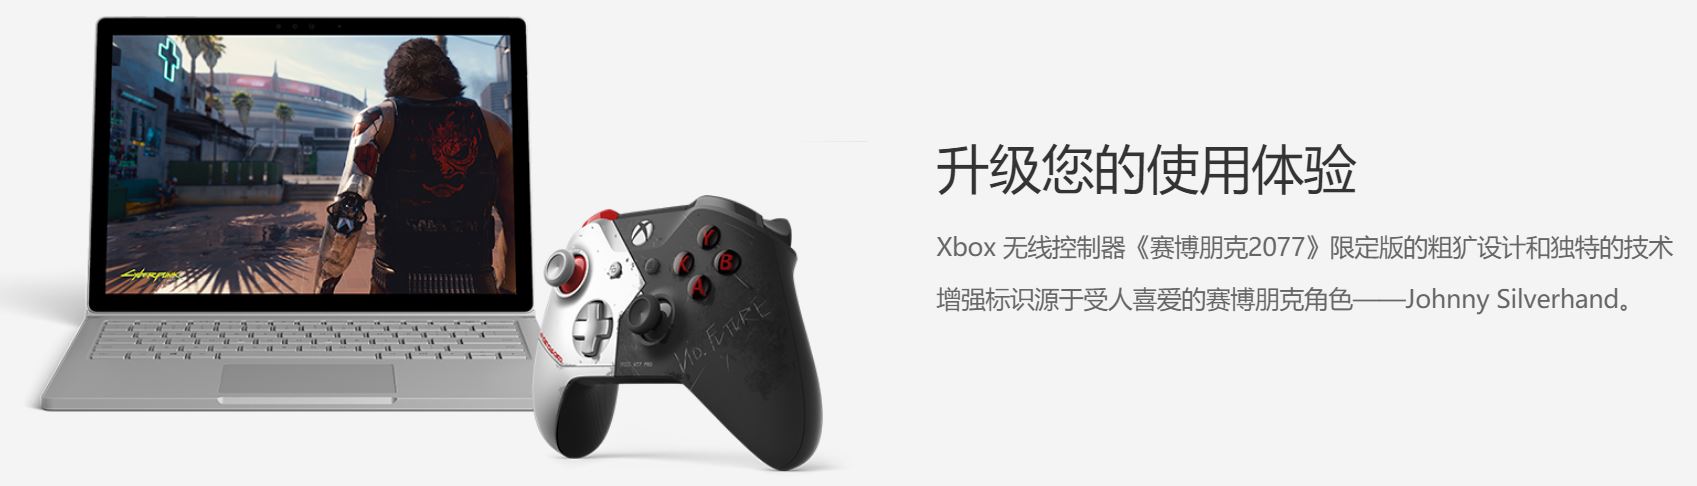 Xbox《電馭叛客2077》限定搖桿國行版上架 定價539元